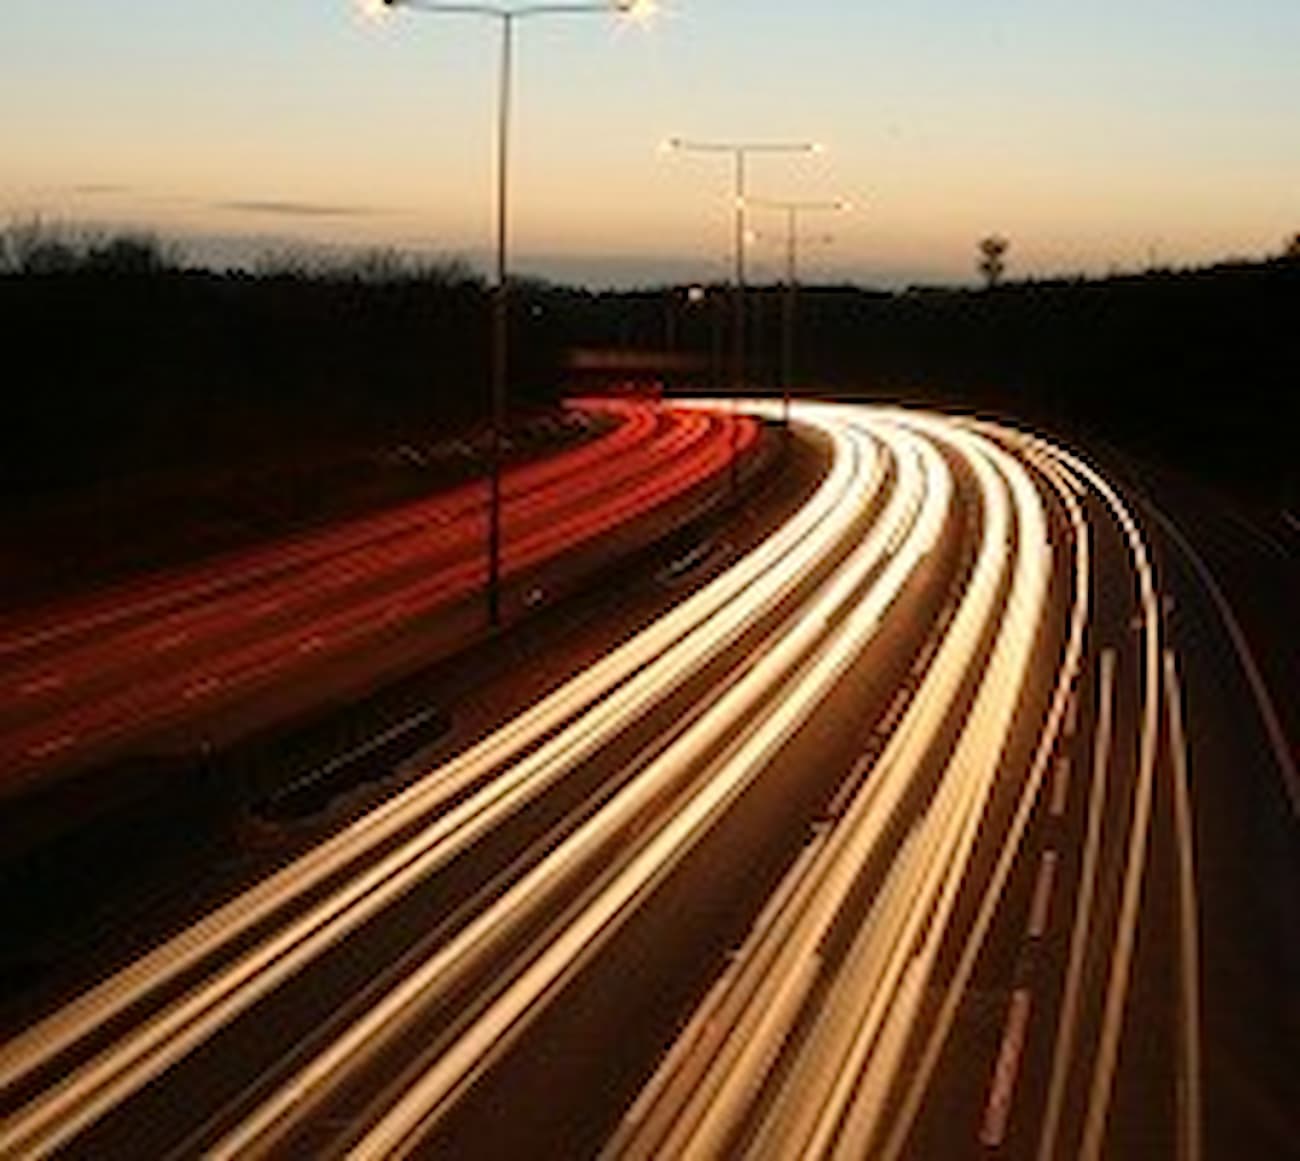 Lit up motorway